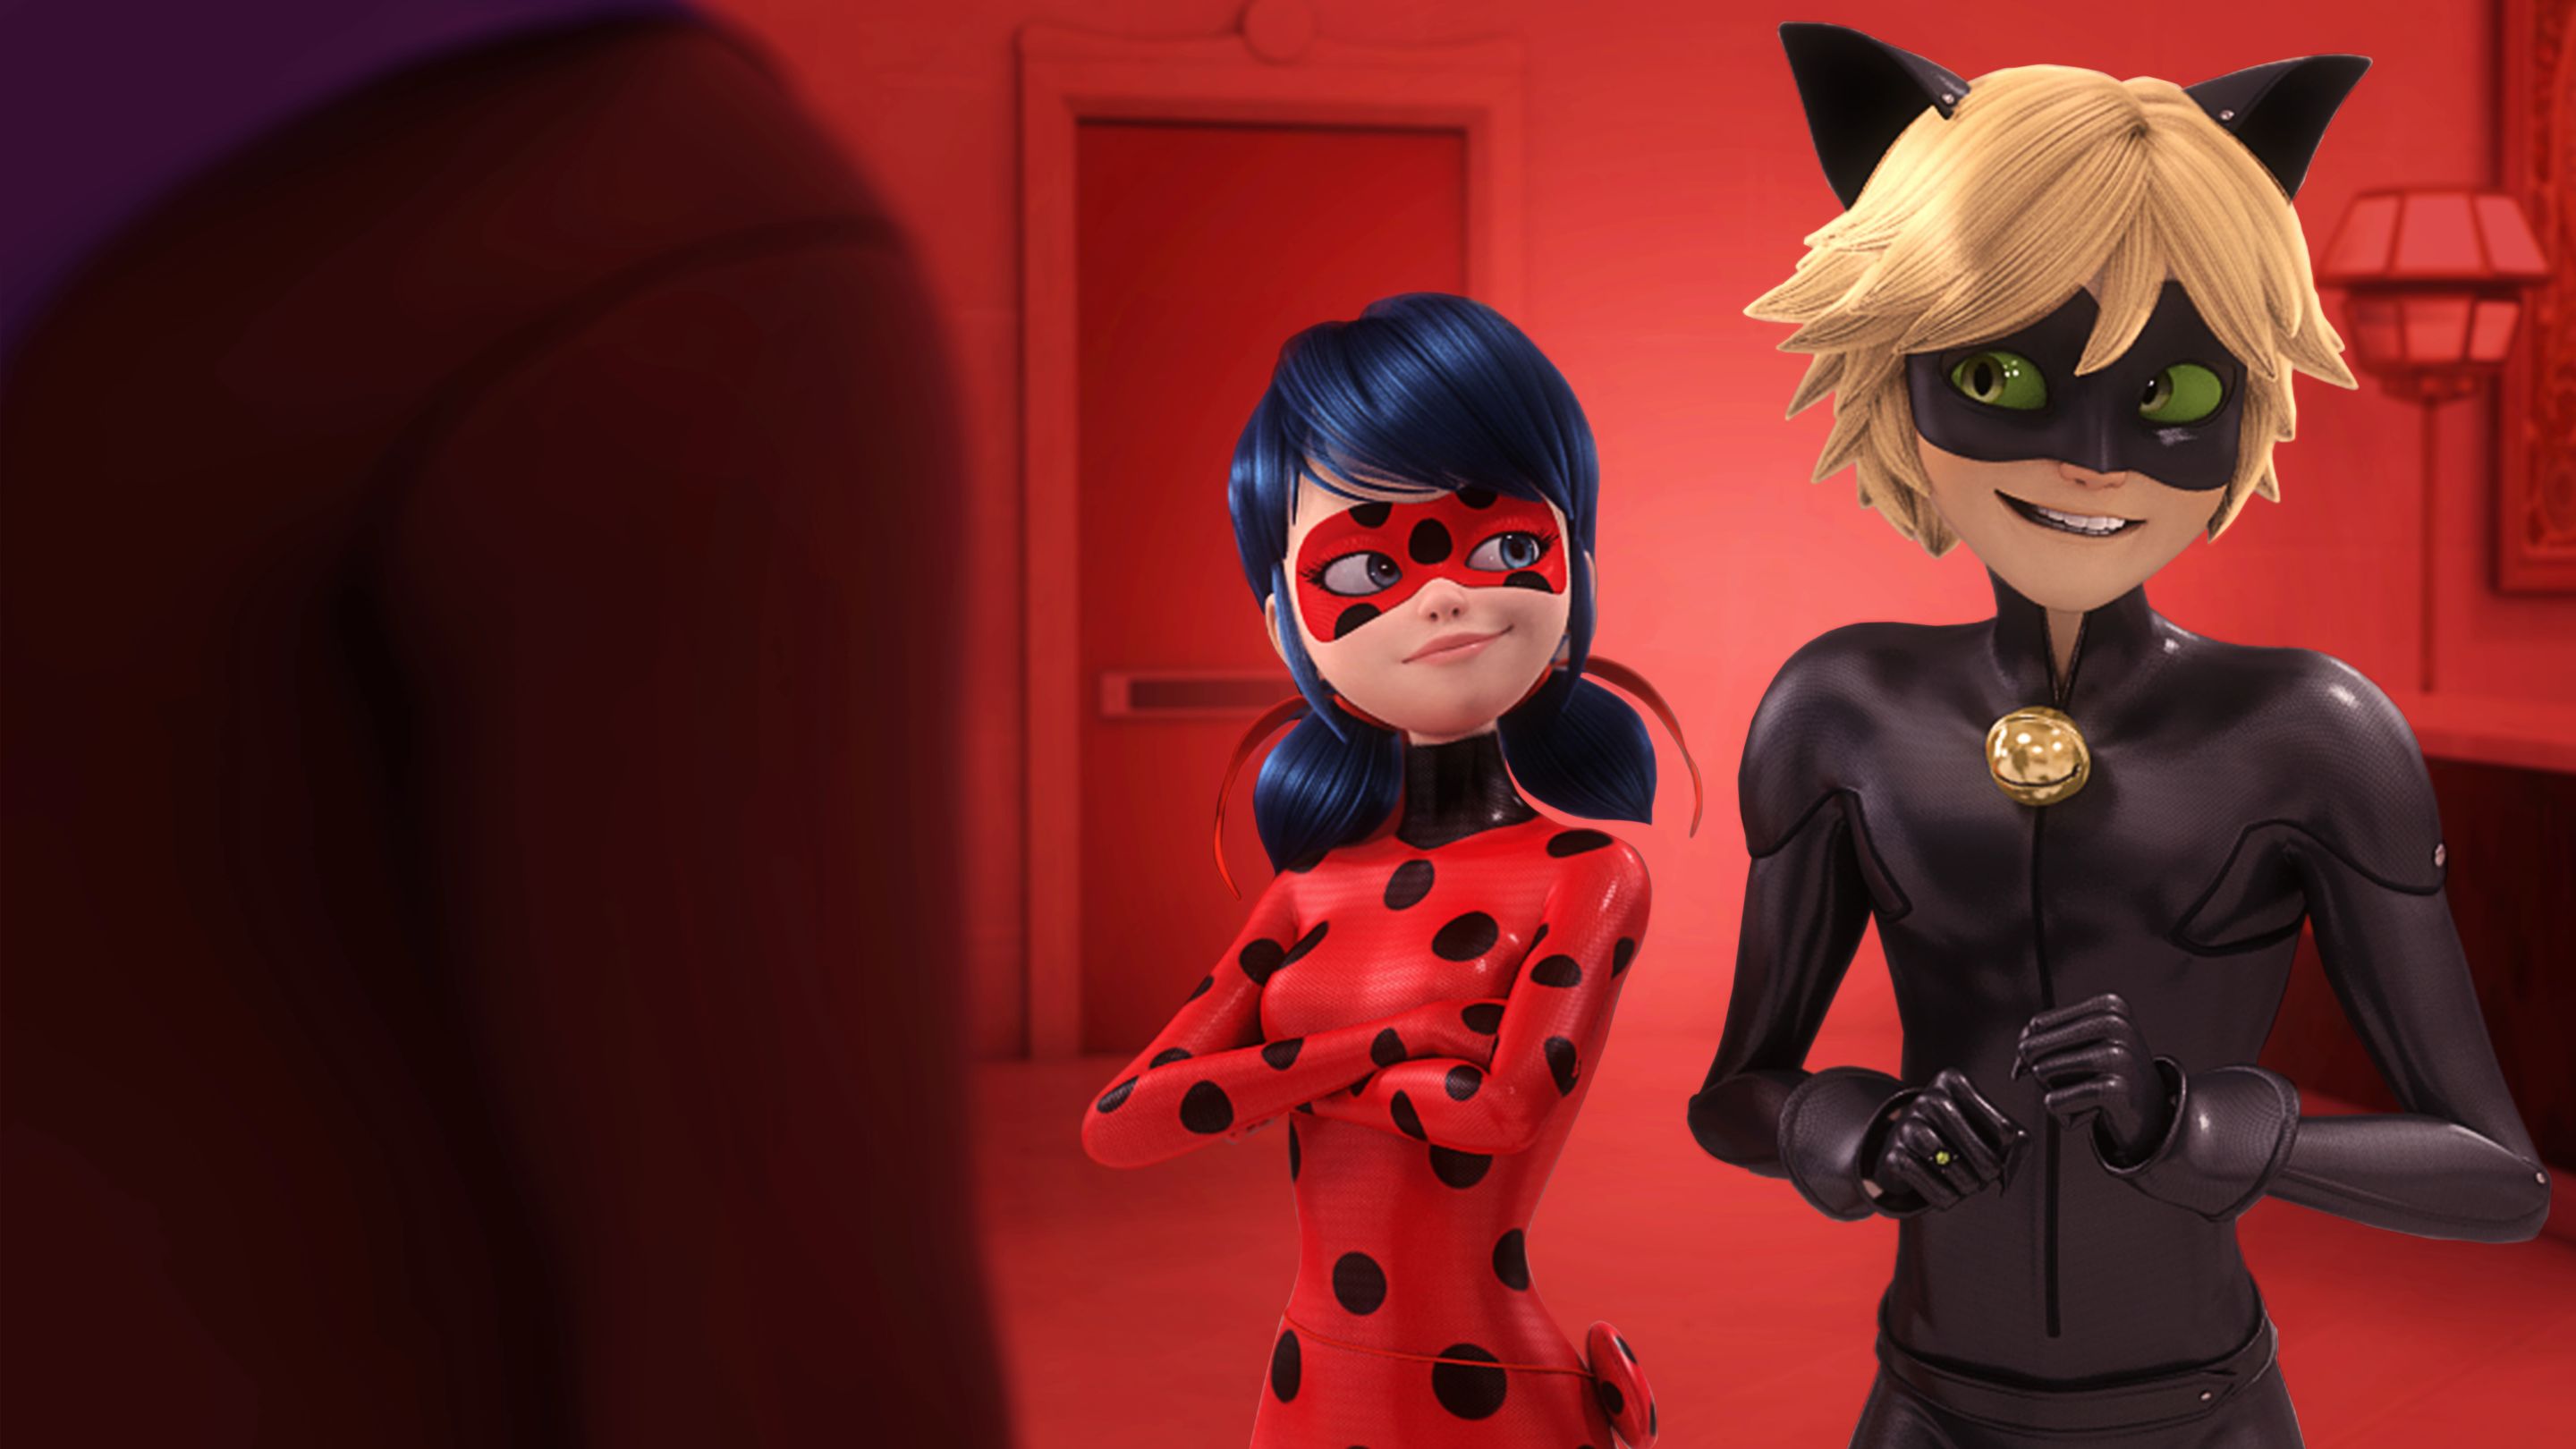 Miraculous: Tales of Ladybug & Cat Noir Season 1 - streaming